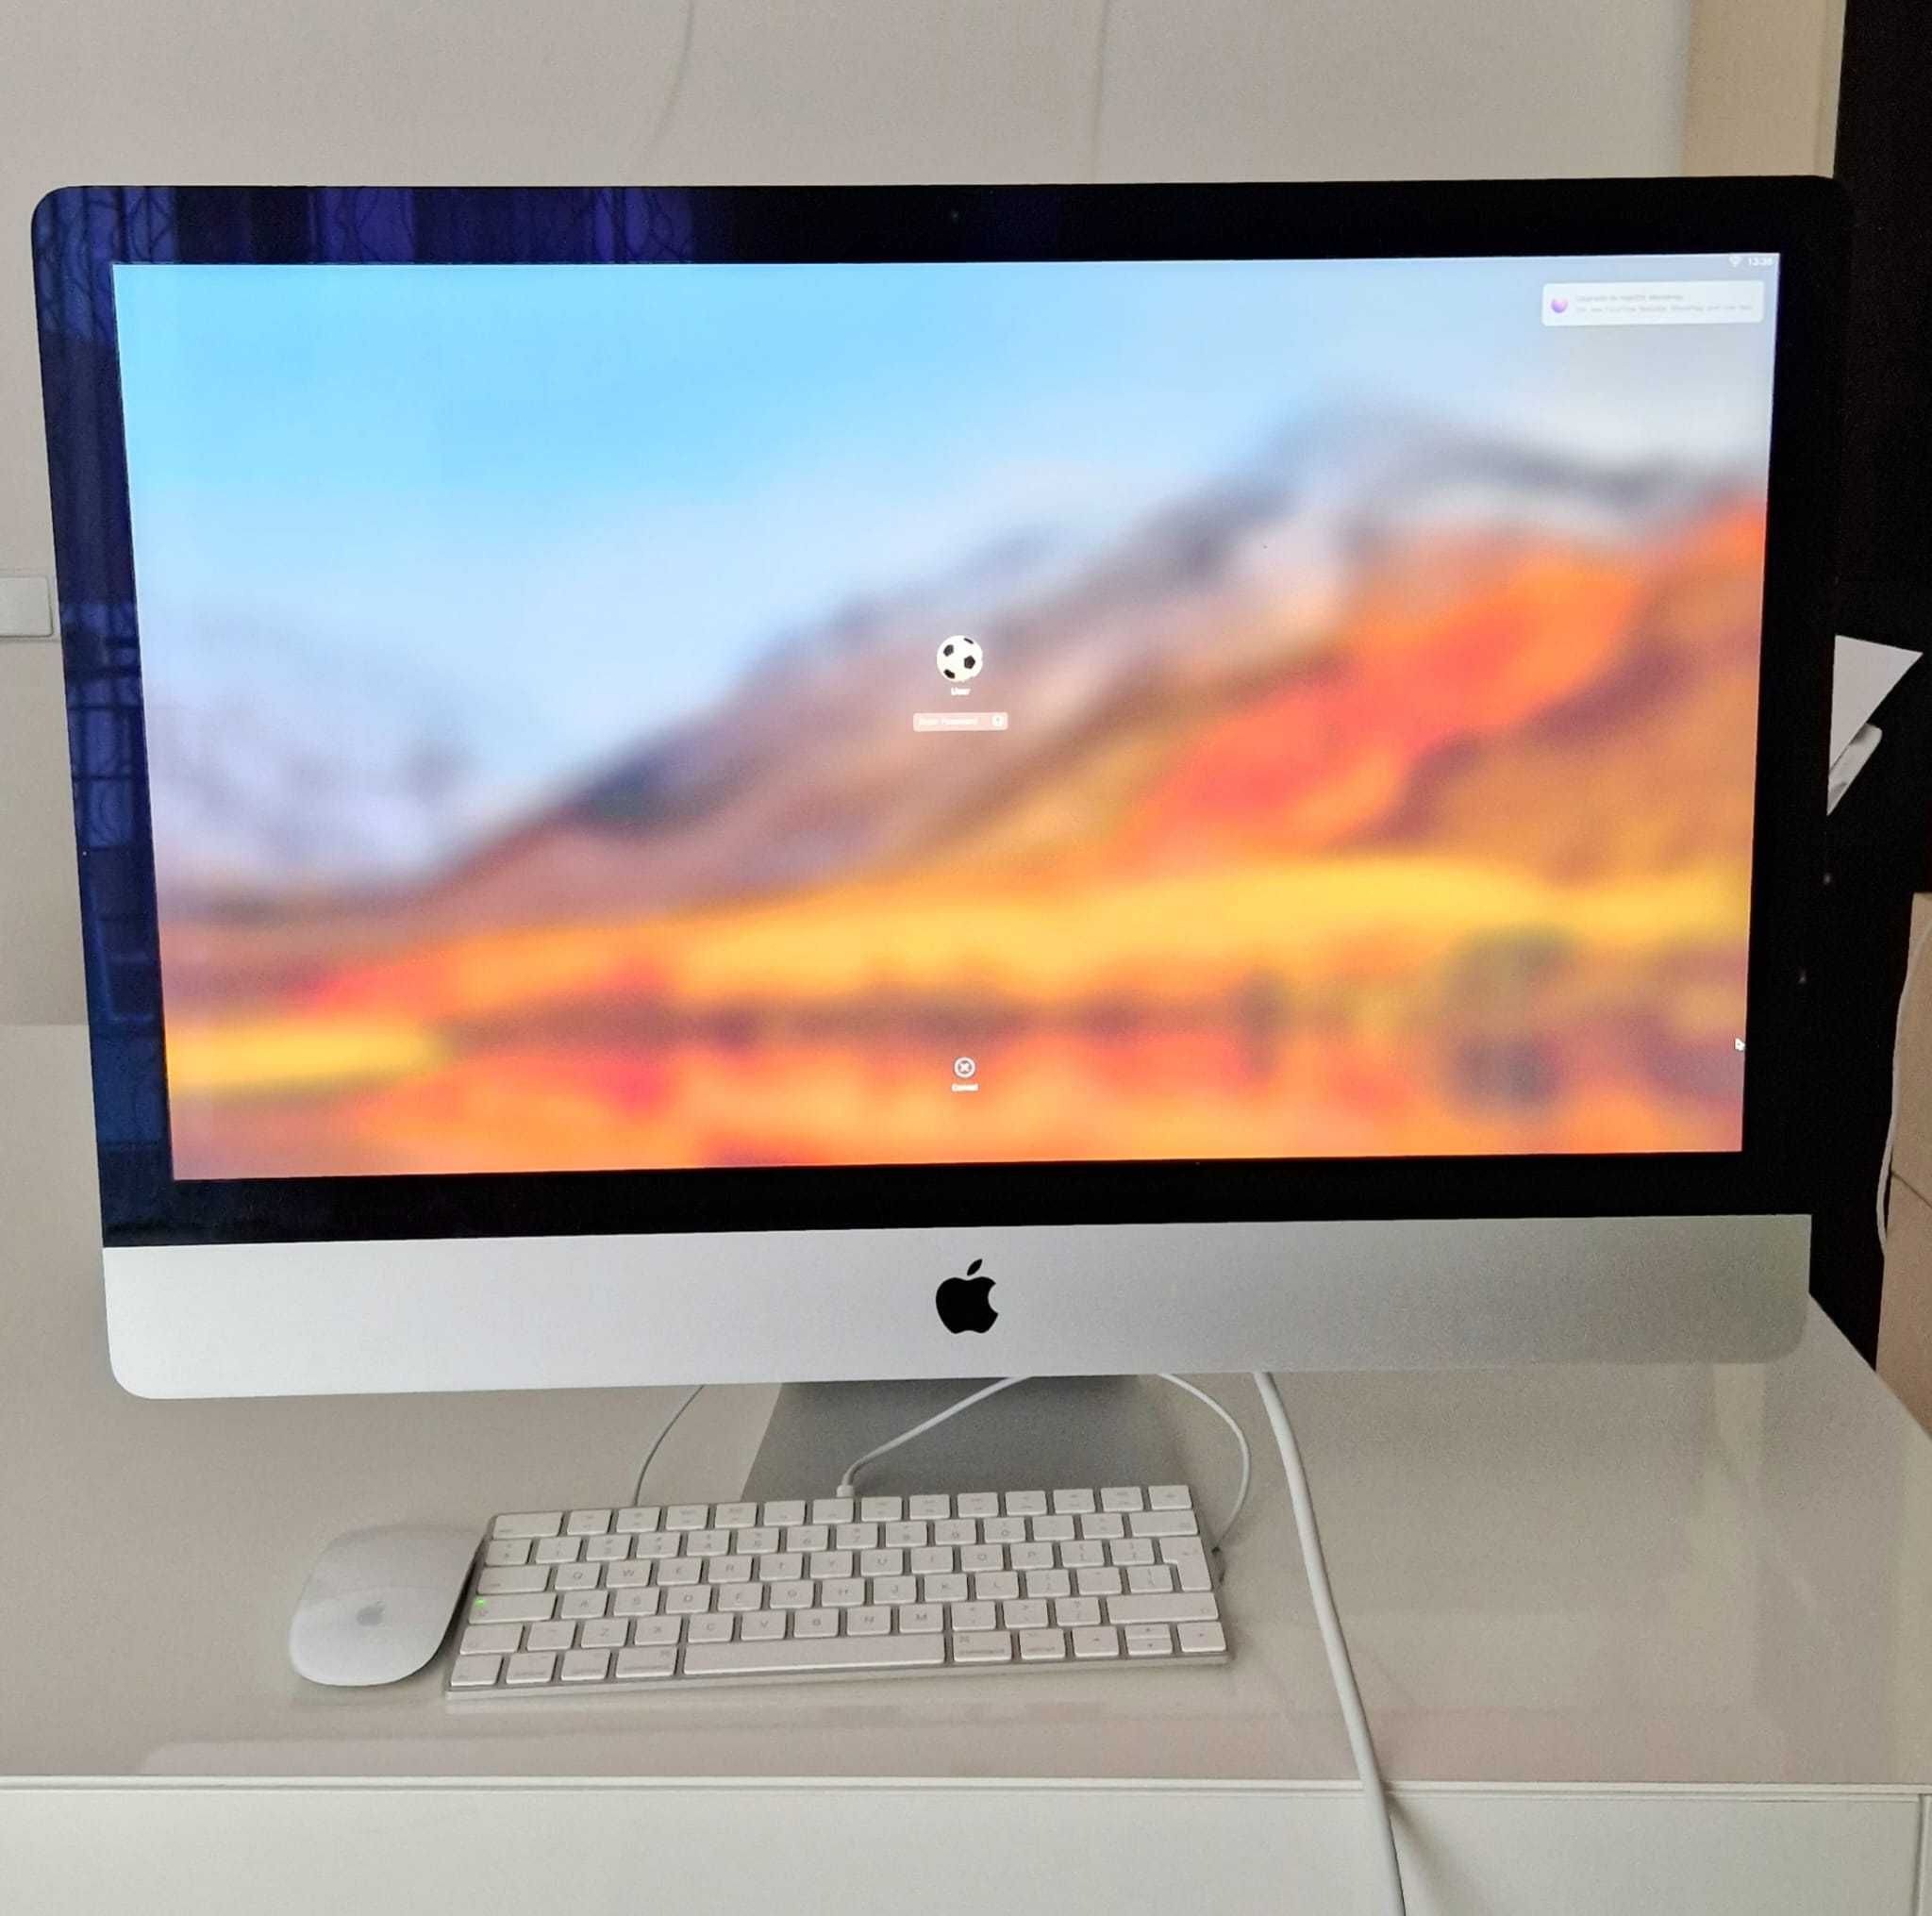 Vand macOS High Sierra 2017, nou, putin utilizat, in cutie originala